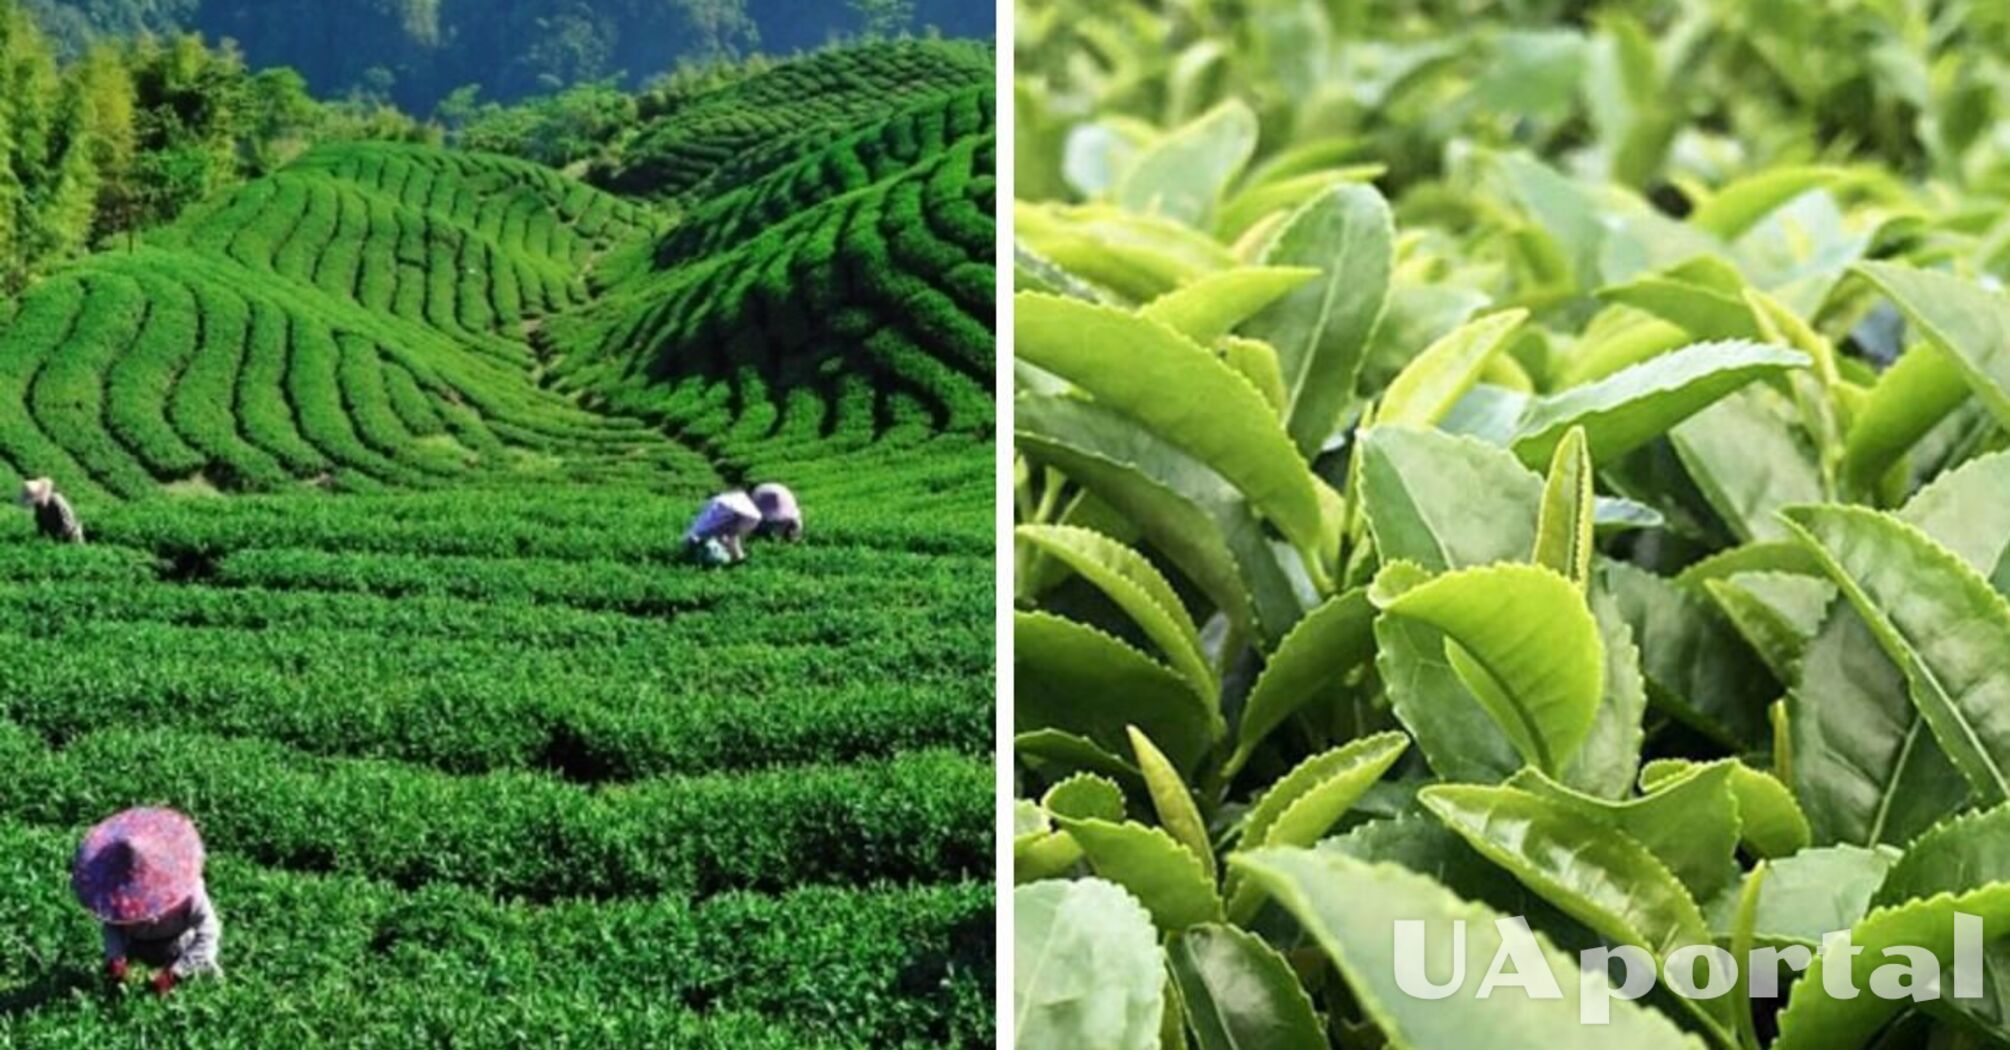 Китайские ученые обнаружили от чего зависит вкус чая